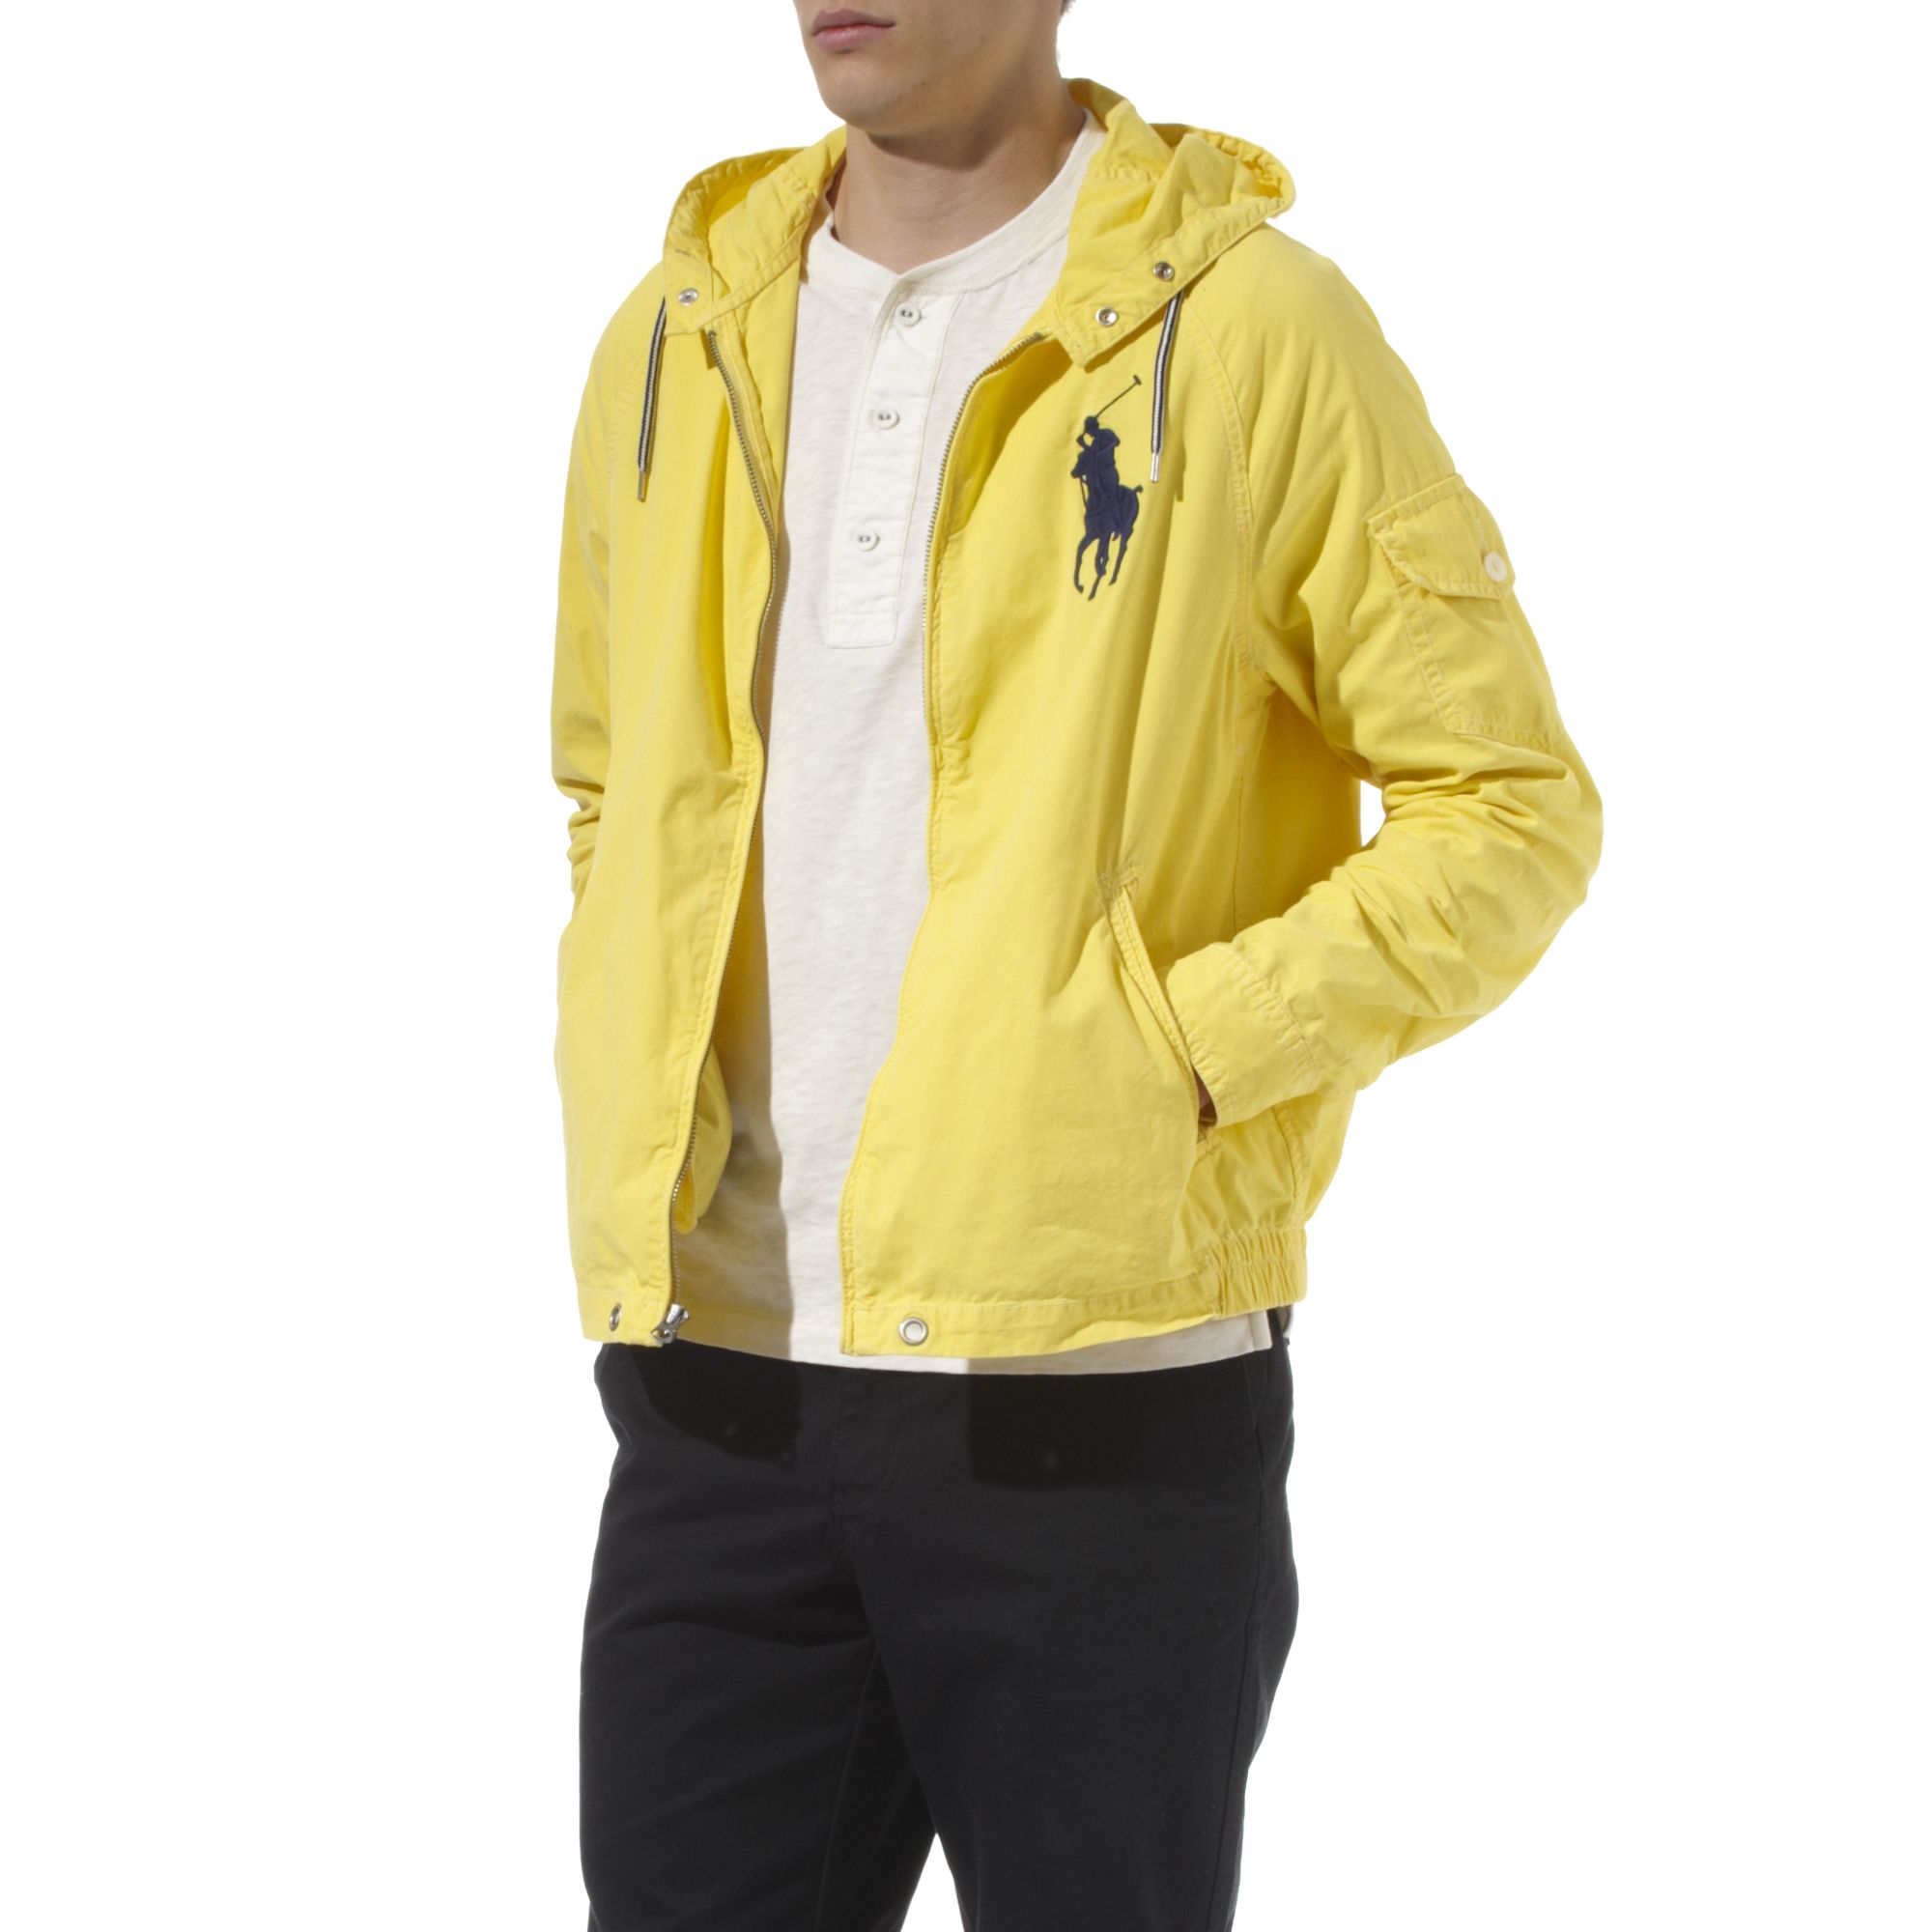 ralph lauren yellow jacket